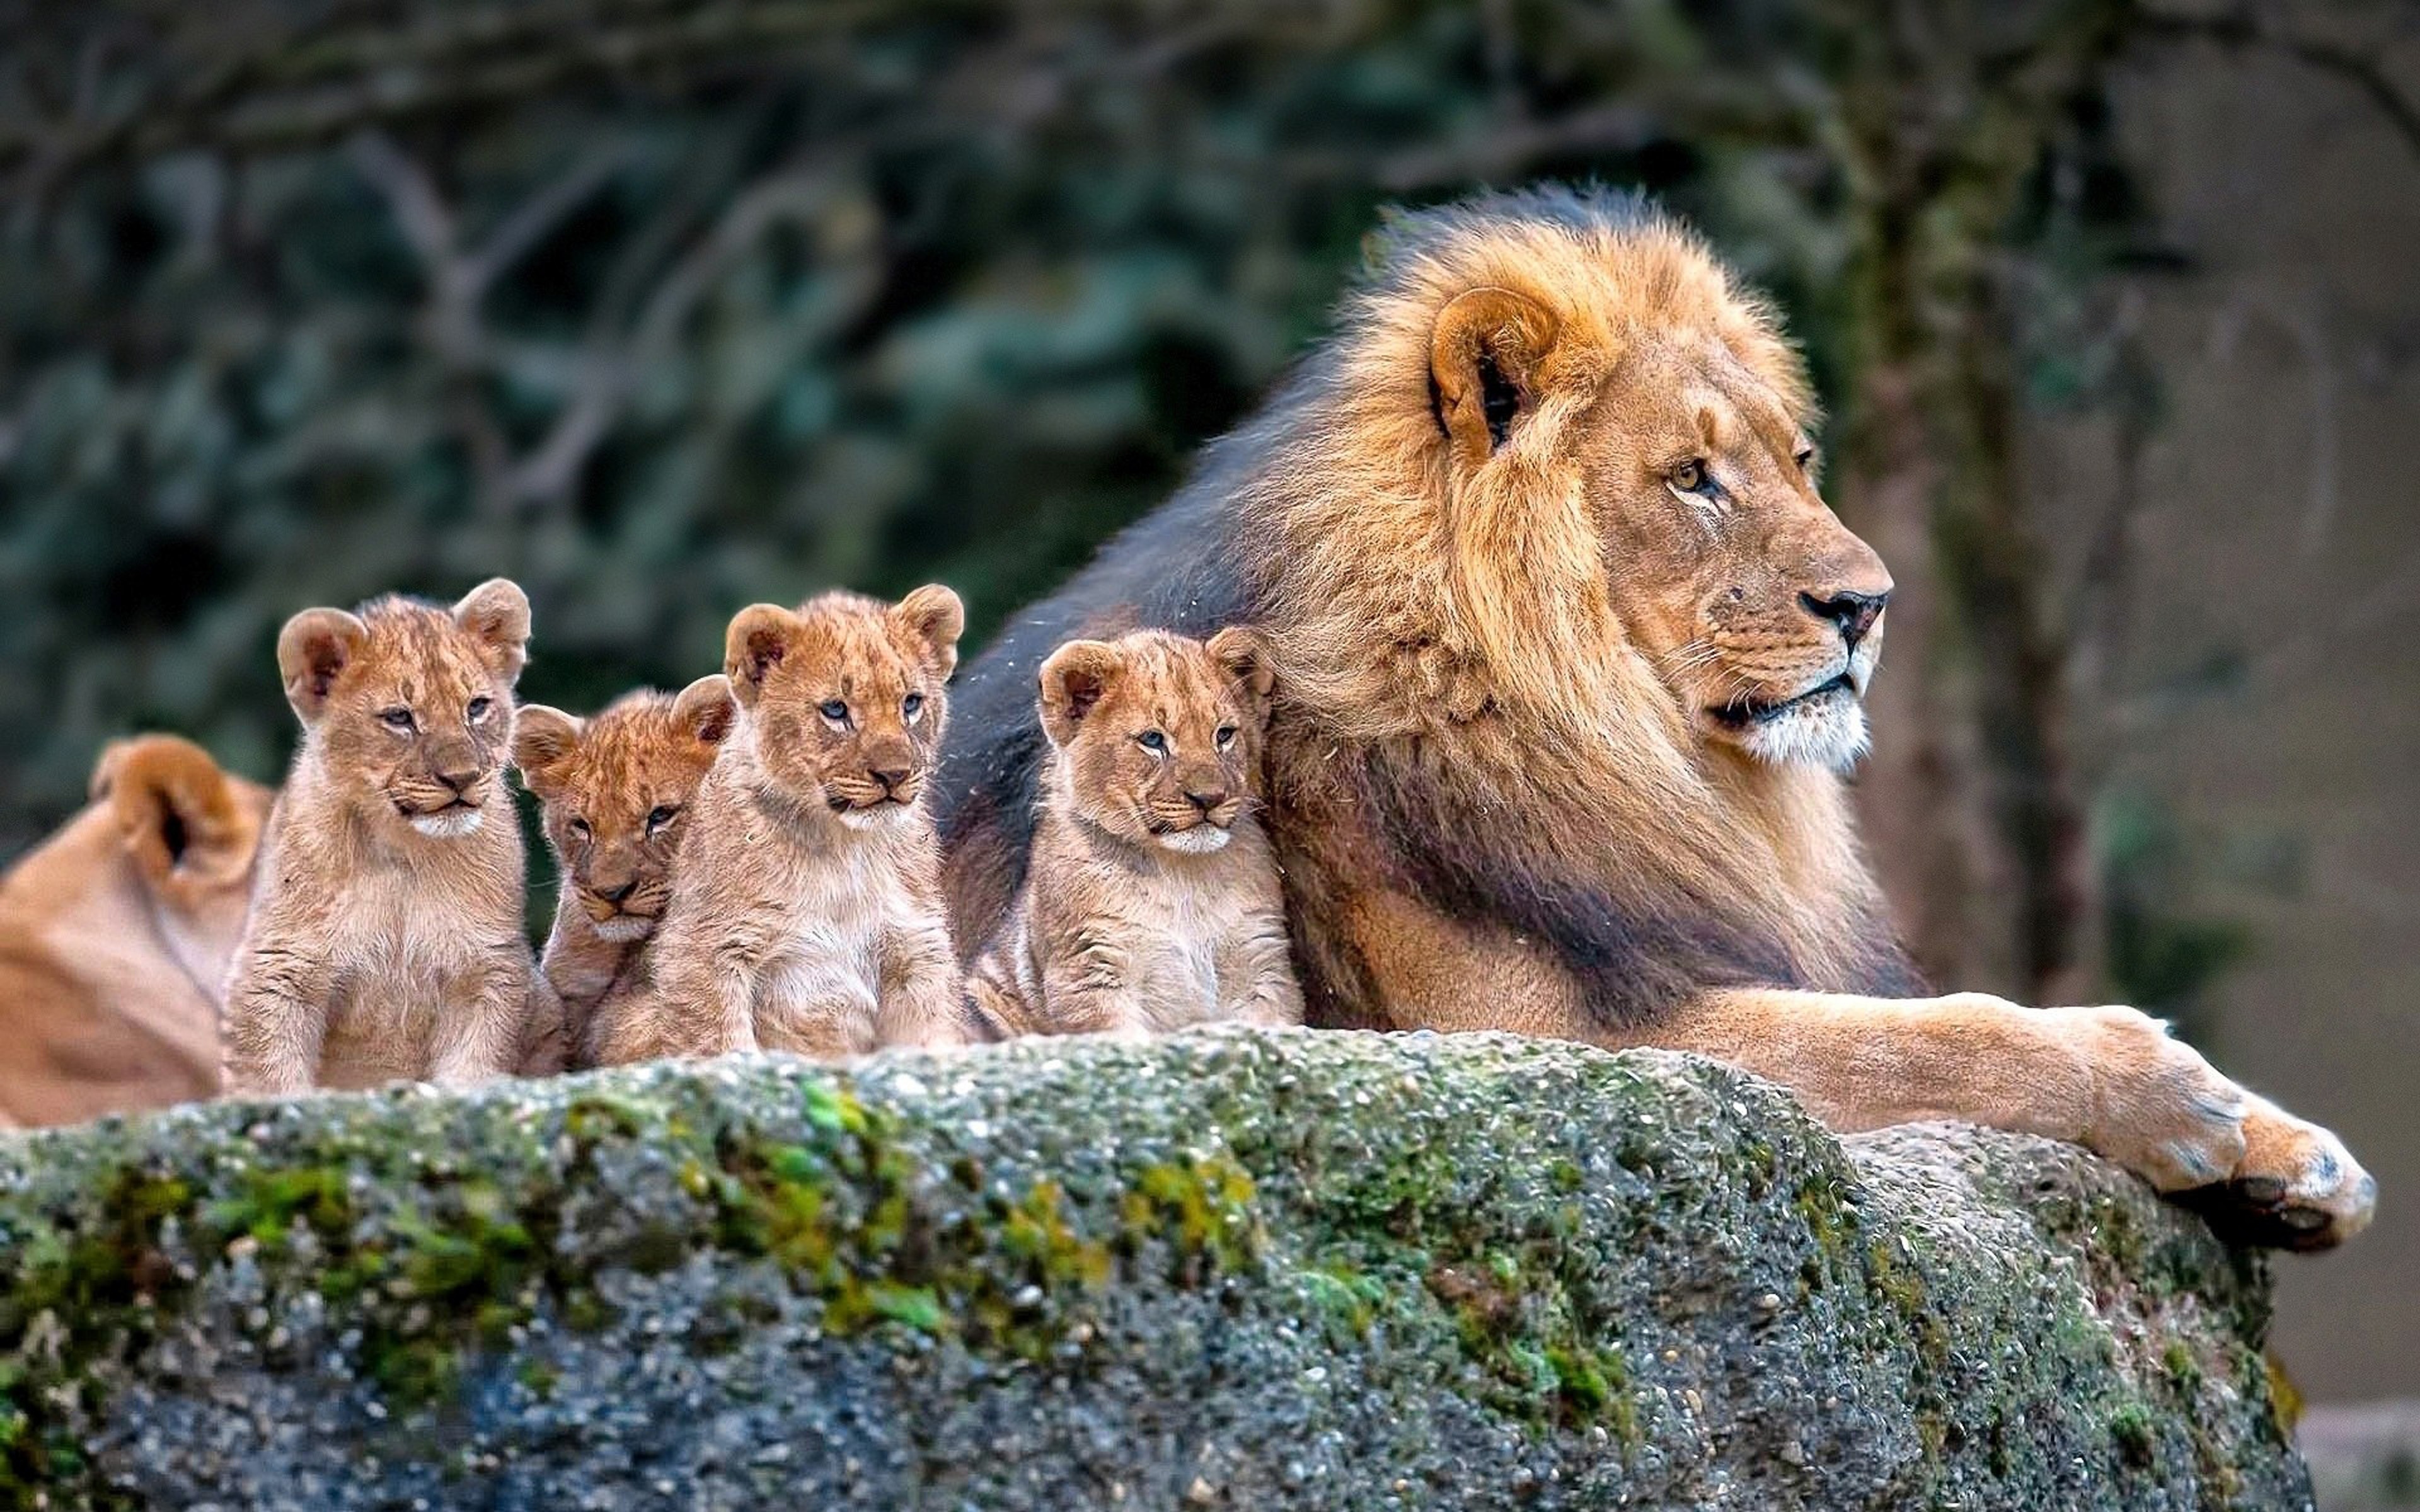 Lion Photo - Lion With Cub - Lion Family